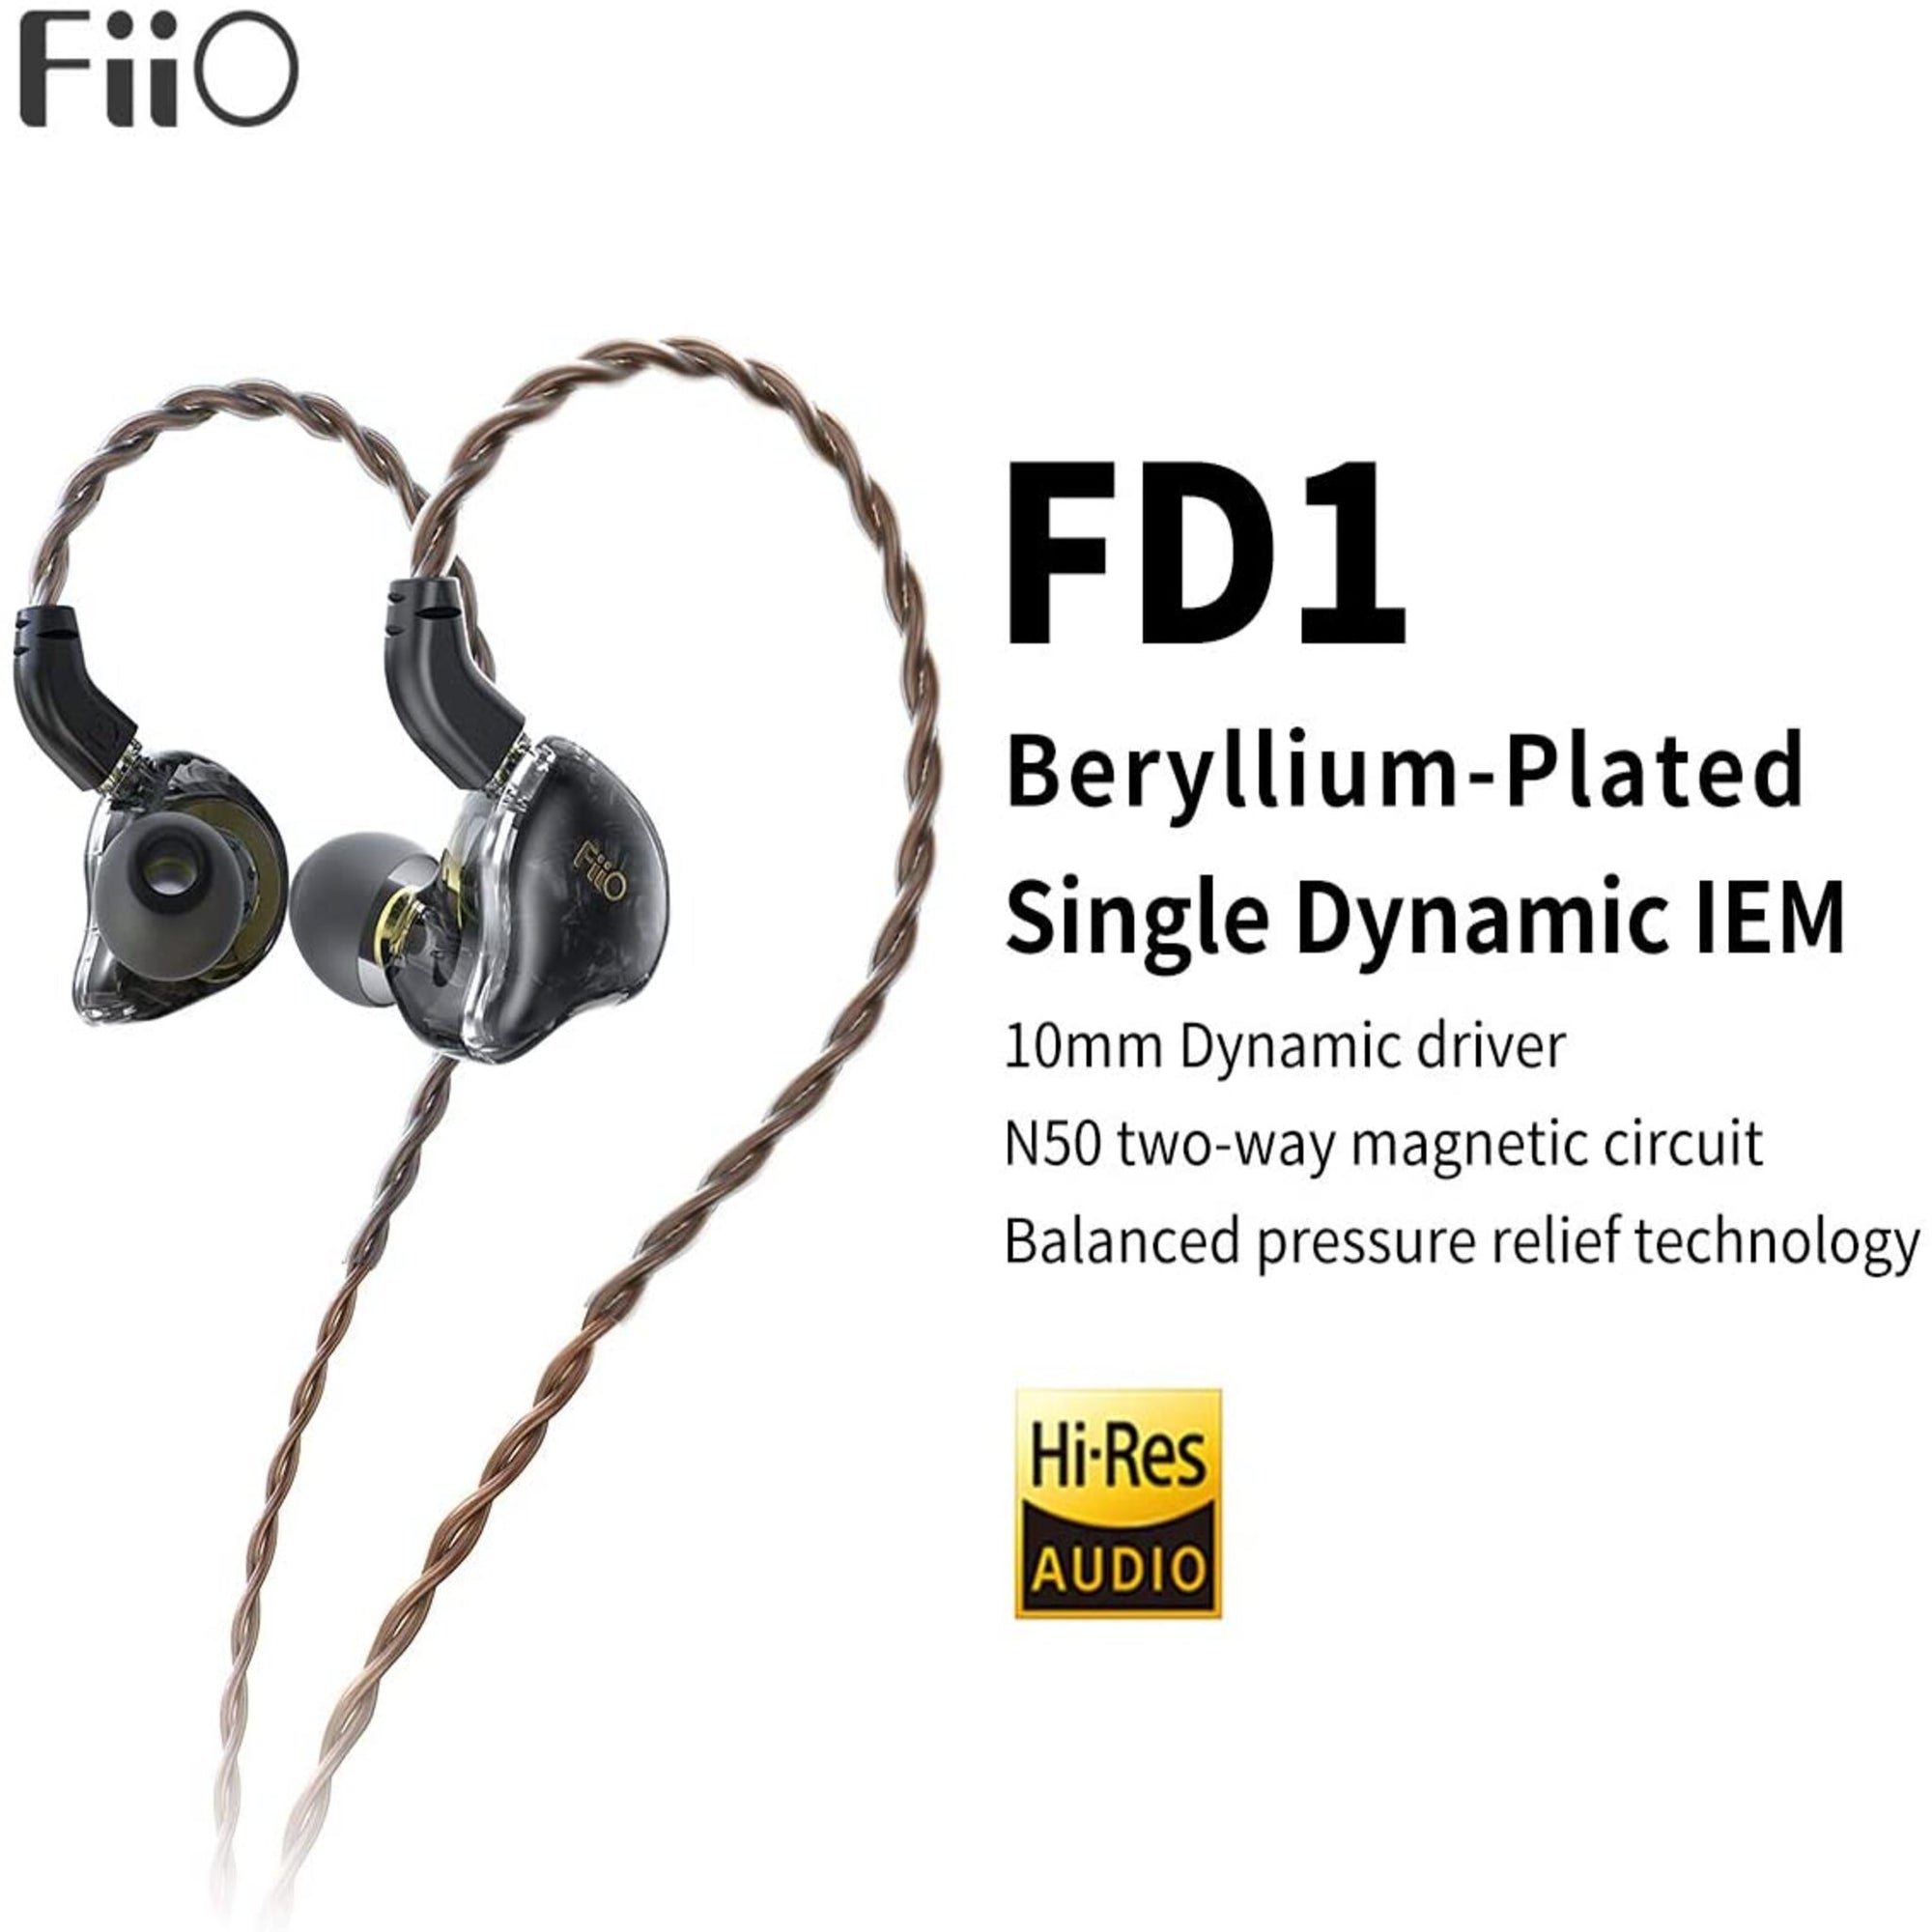 Fiio FD1 Beryllium-Plated Single Dynamic IEM